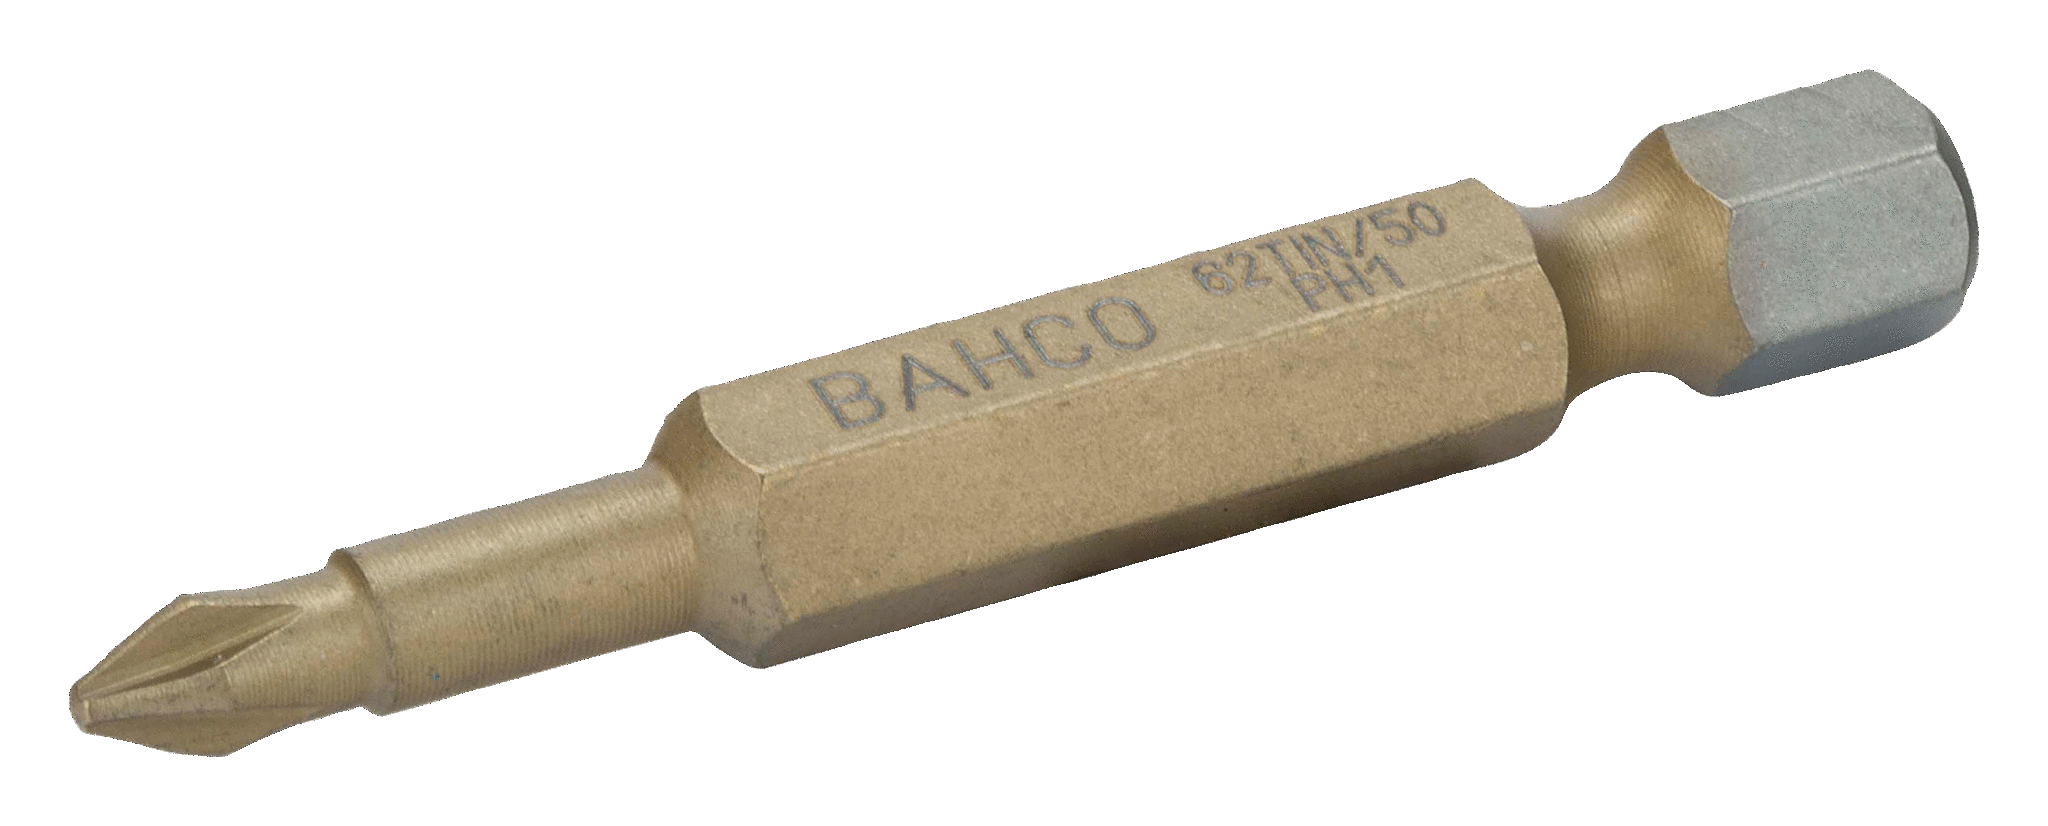 Торсионные биты с покрытием из нитрида титана для отверток Phillips, 50 мм BAHCO 62TIN/50PH1